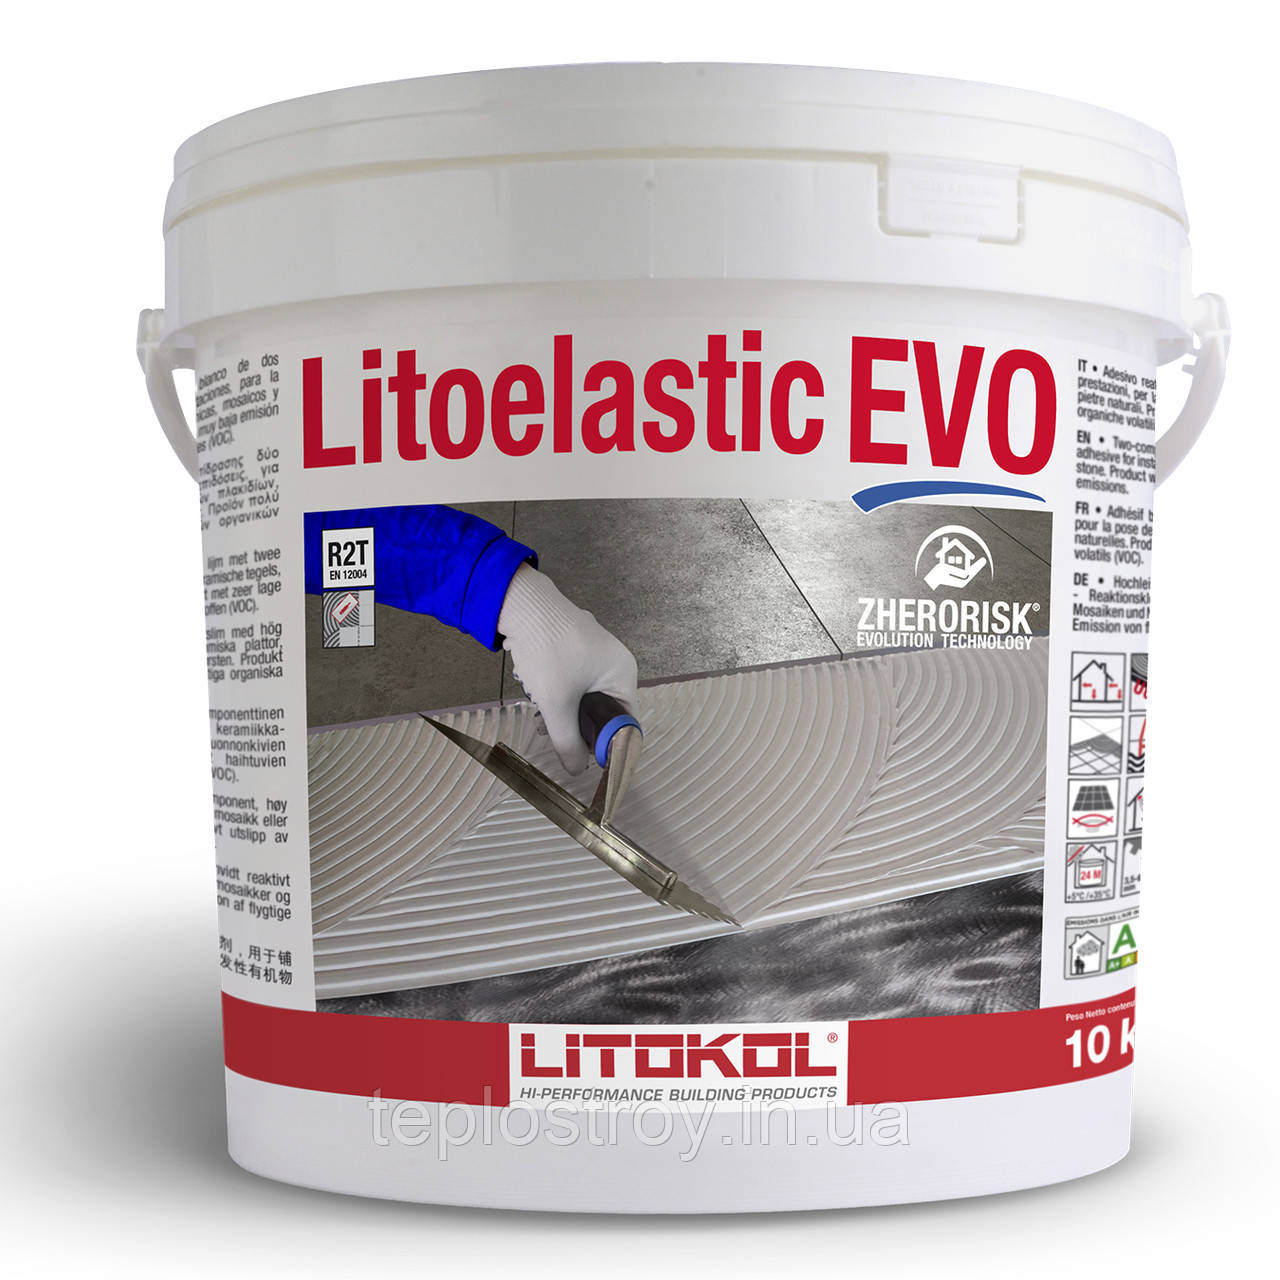 Litoelastic EVO - Реактивний клей для усіх видів плитки, керамограніту,  для теплих підлог. Відро 10 кг